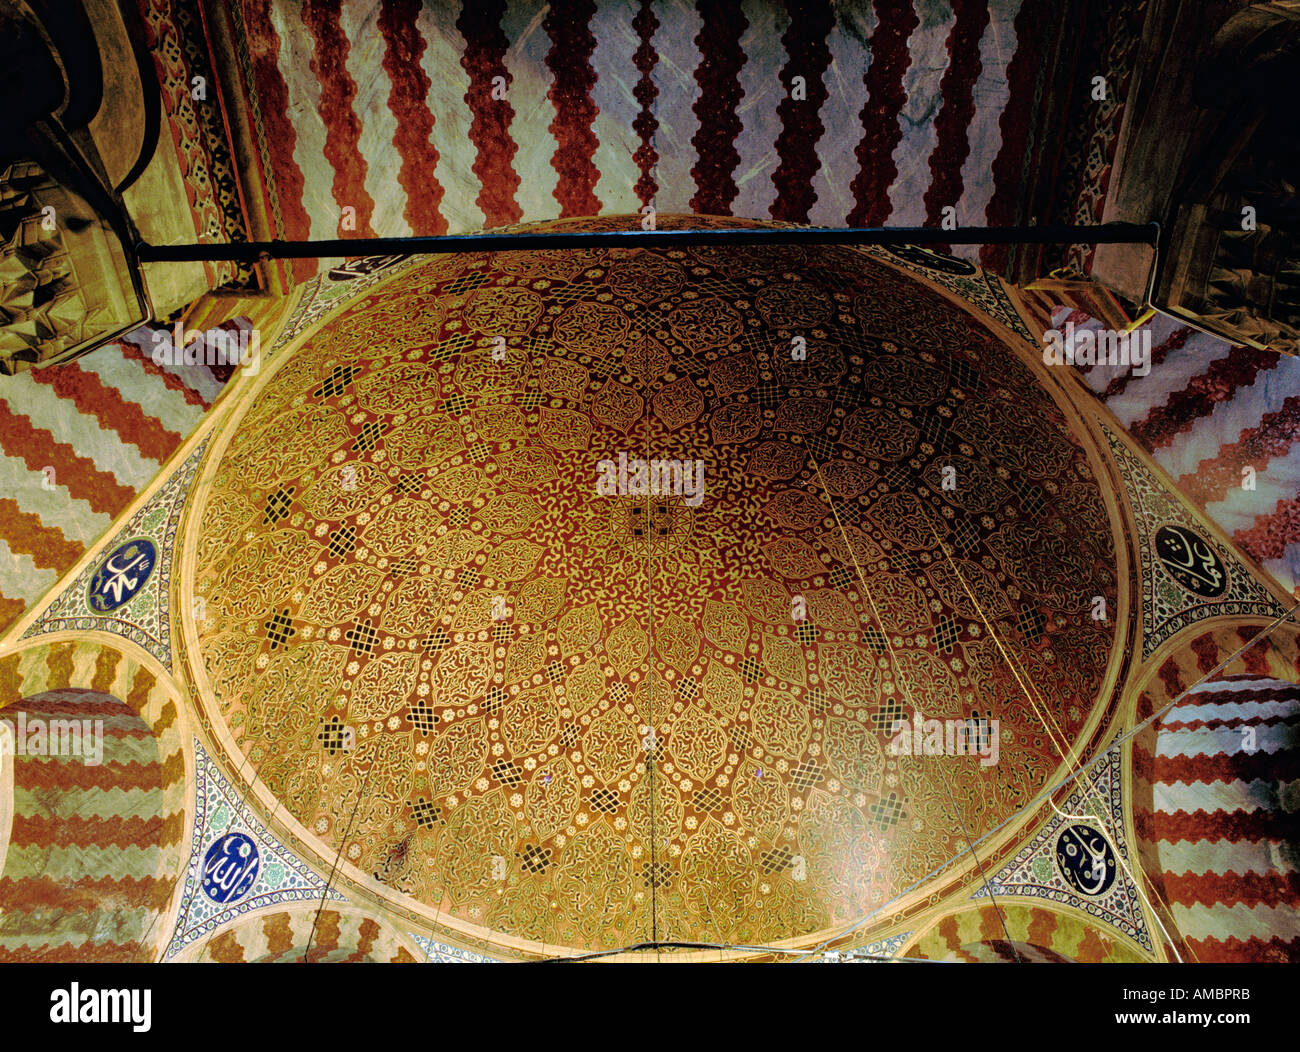 Interieur, Mausoleum von Sultan Süleyman der prächtige, Istanbul, Türkei Stockfoto